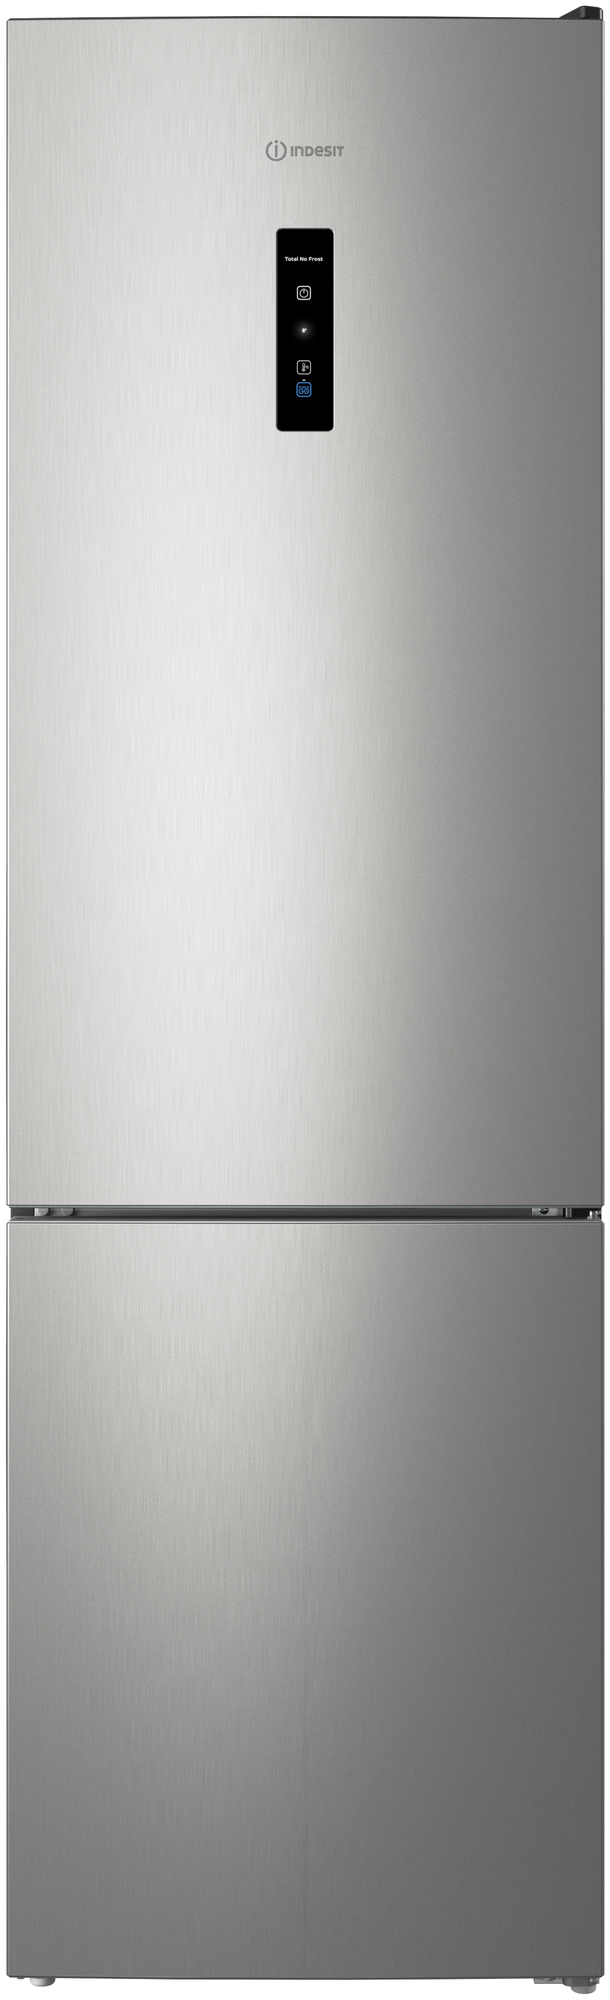 Отдельно стоящий холодильник Indesit с морозильной камерой: frost free ITR 5200 X - фотография № 1